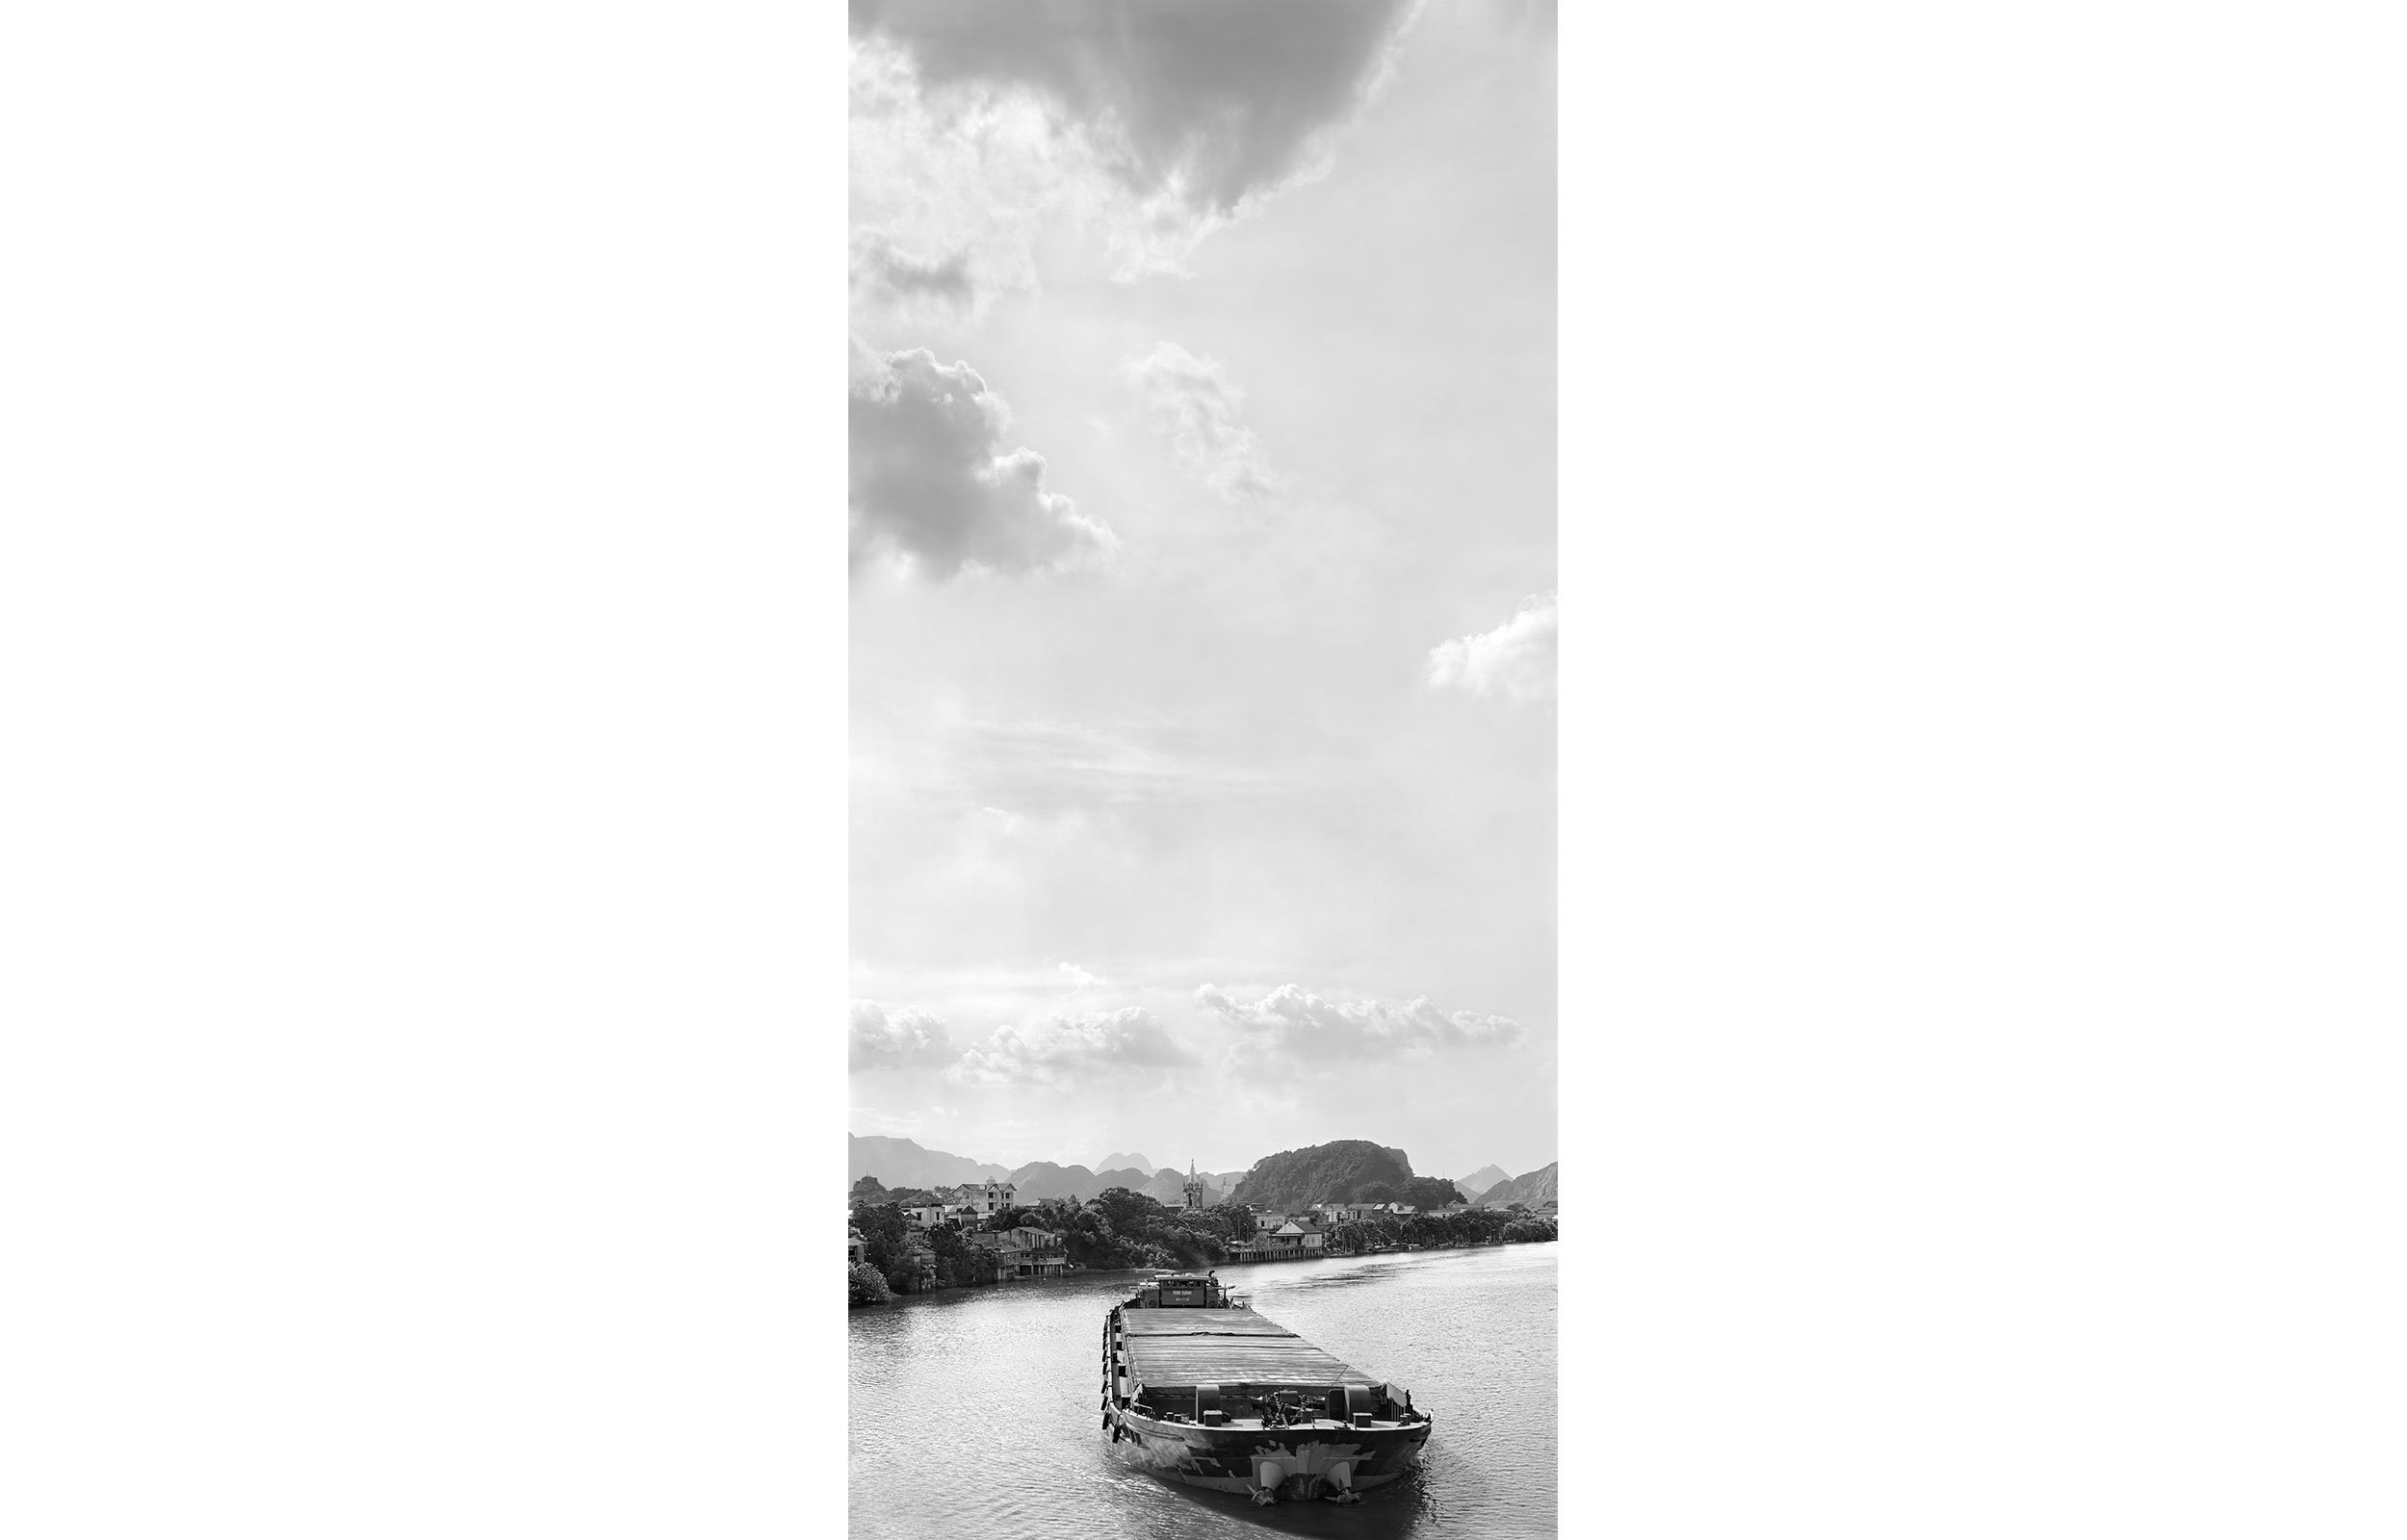 Hoàng Long River, Ninh Bình Province, Vietnam, 2022